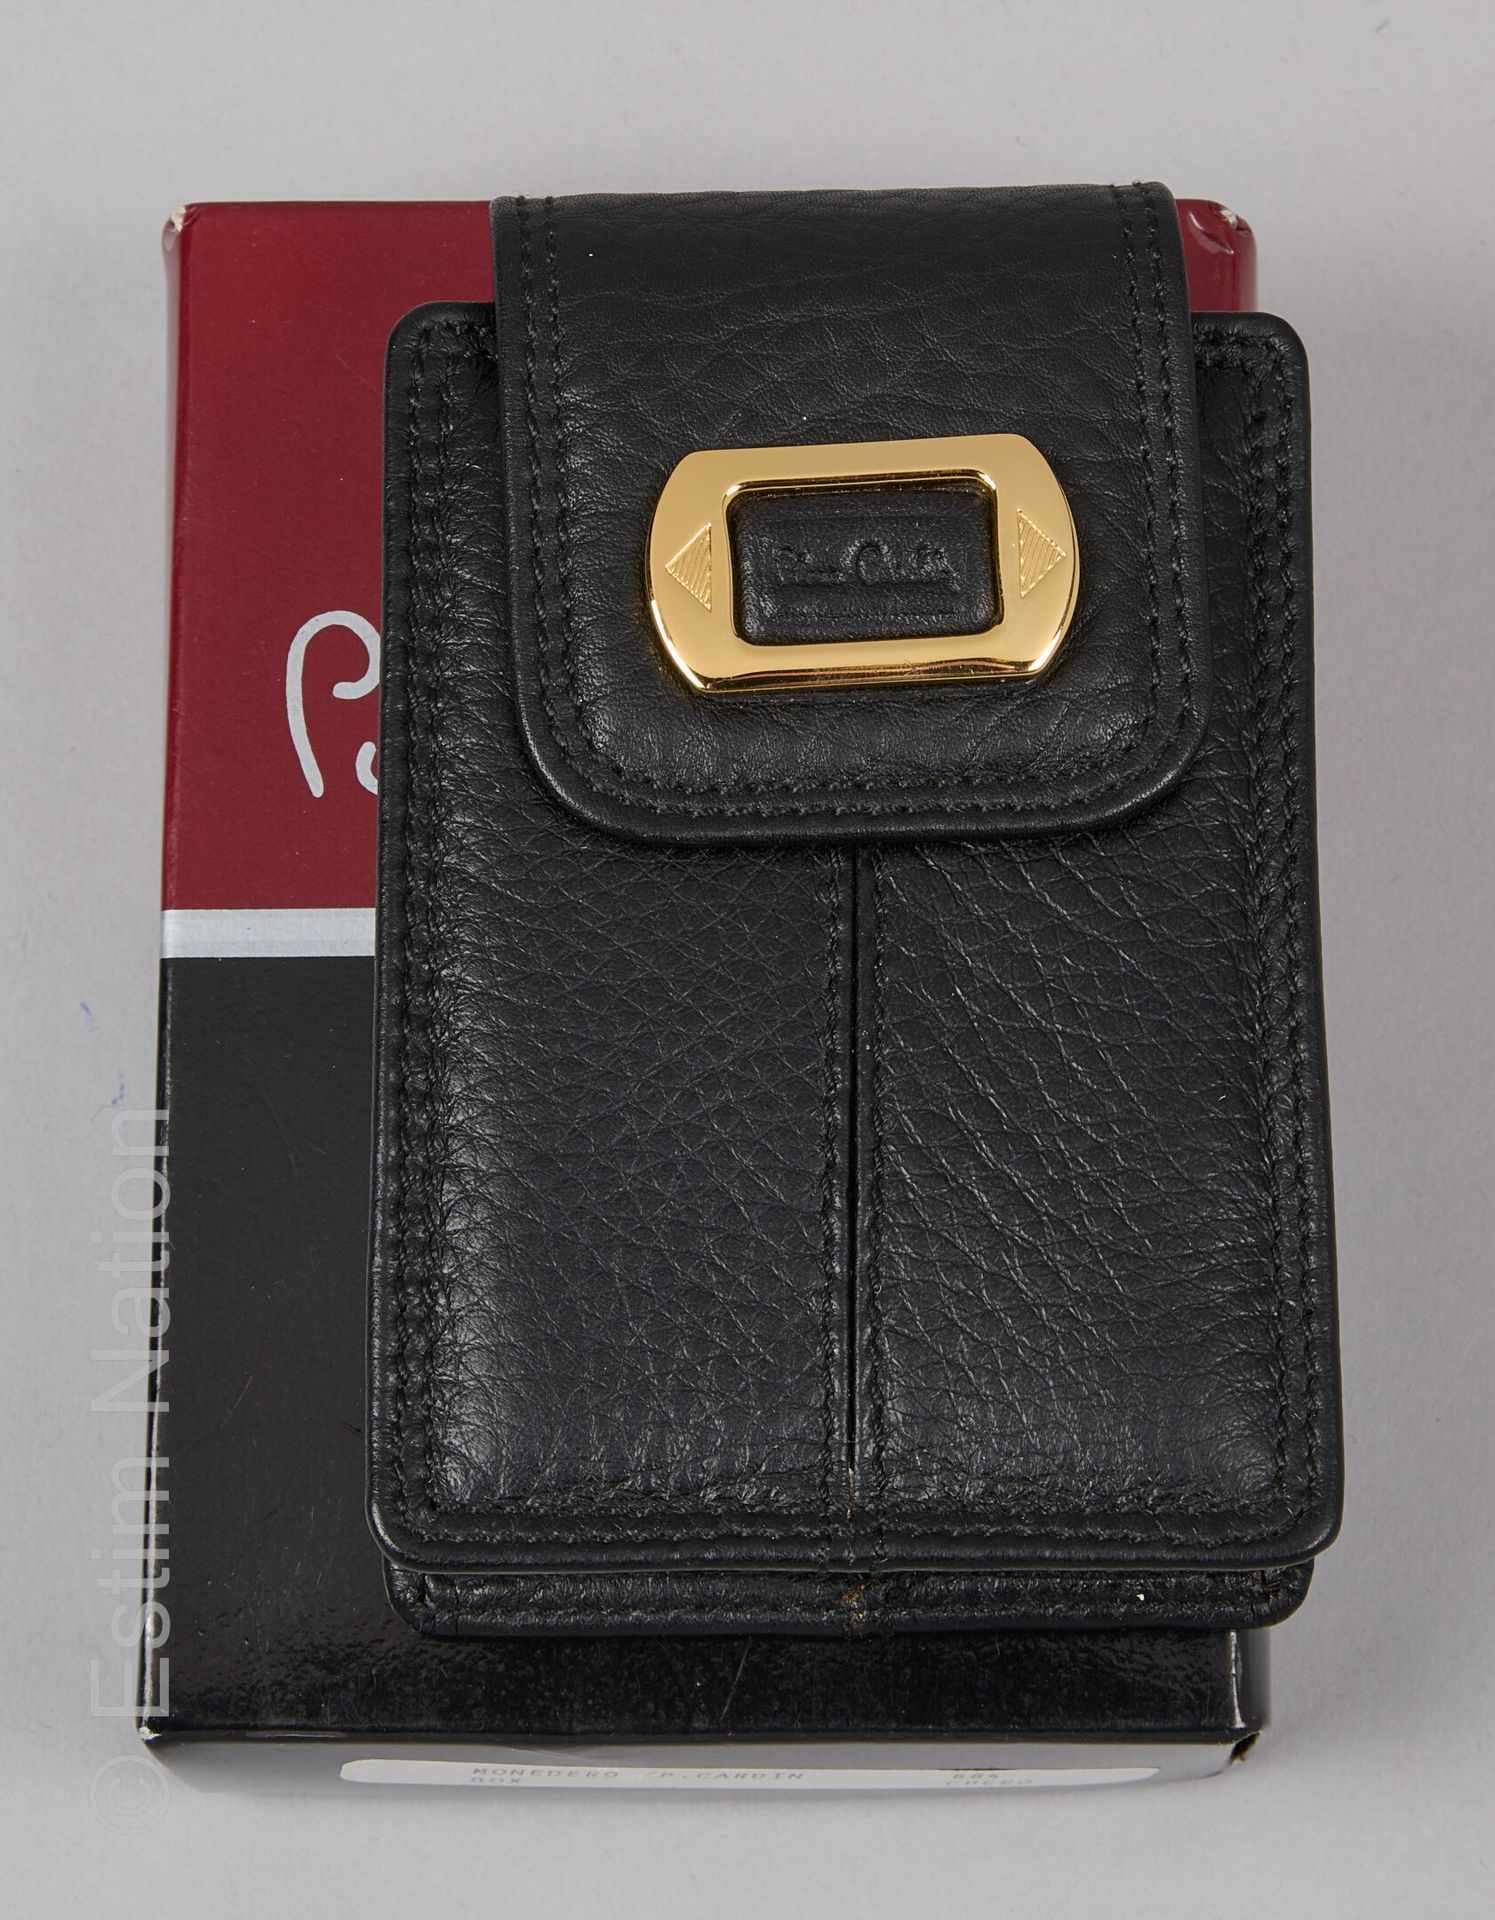 PIERRE CARDIN ETUI à cigarettes en cuir grainé noir (dans sa boîte) (10 x 7 cm) &hellip;